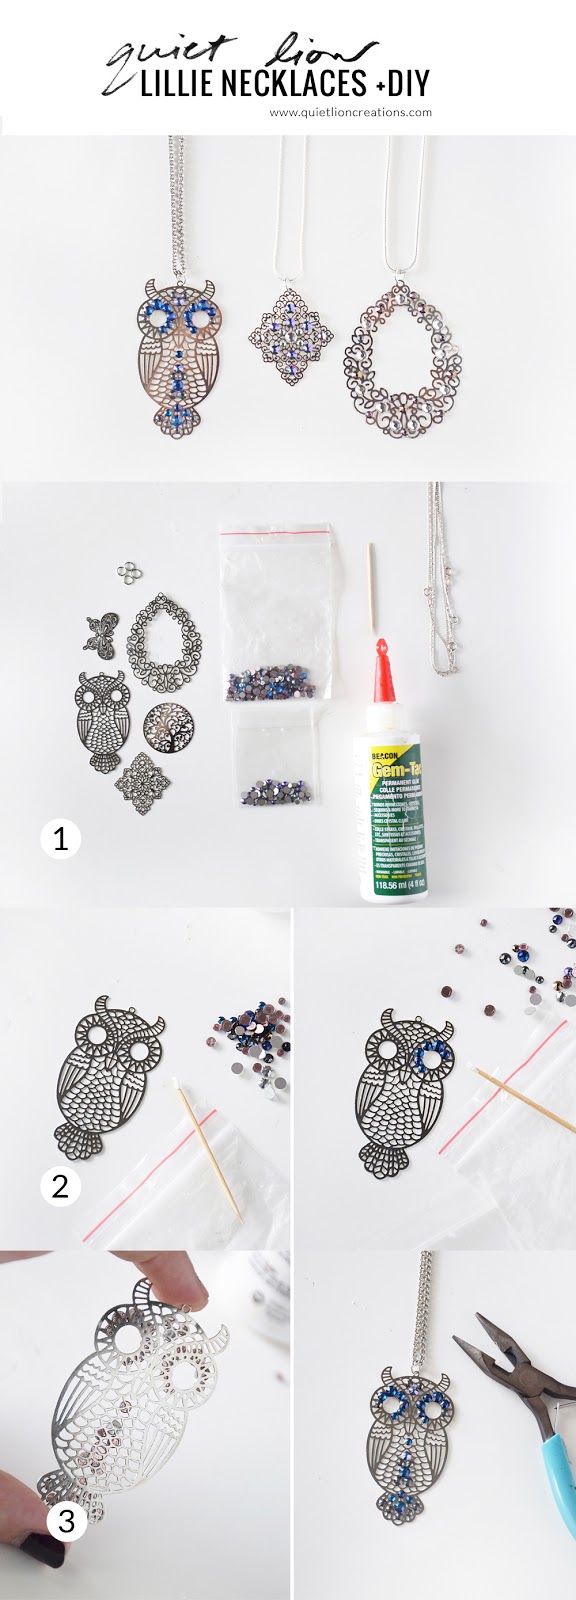 diy lillie necklaces – Quiet Lion Creations